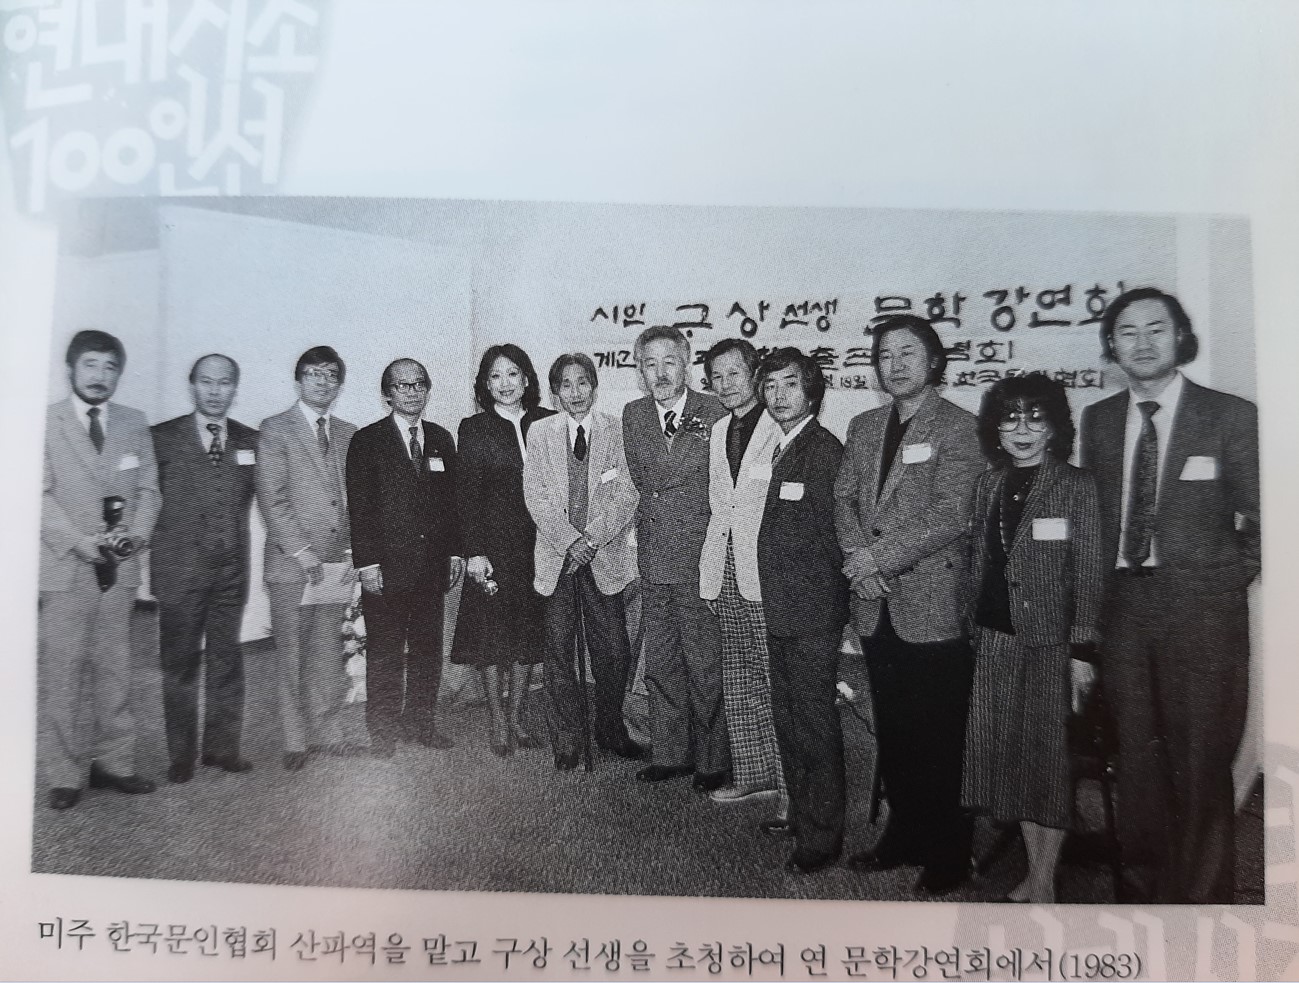 김호길 시인 구상선생과 함께 -1983년 사진.jpg